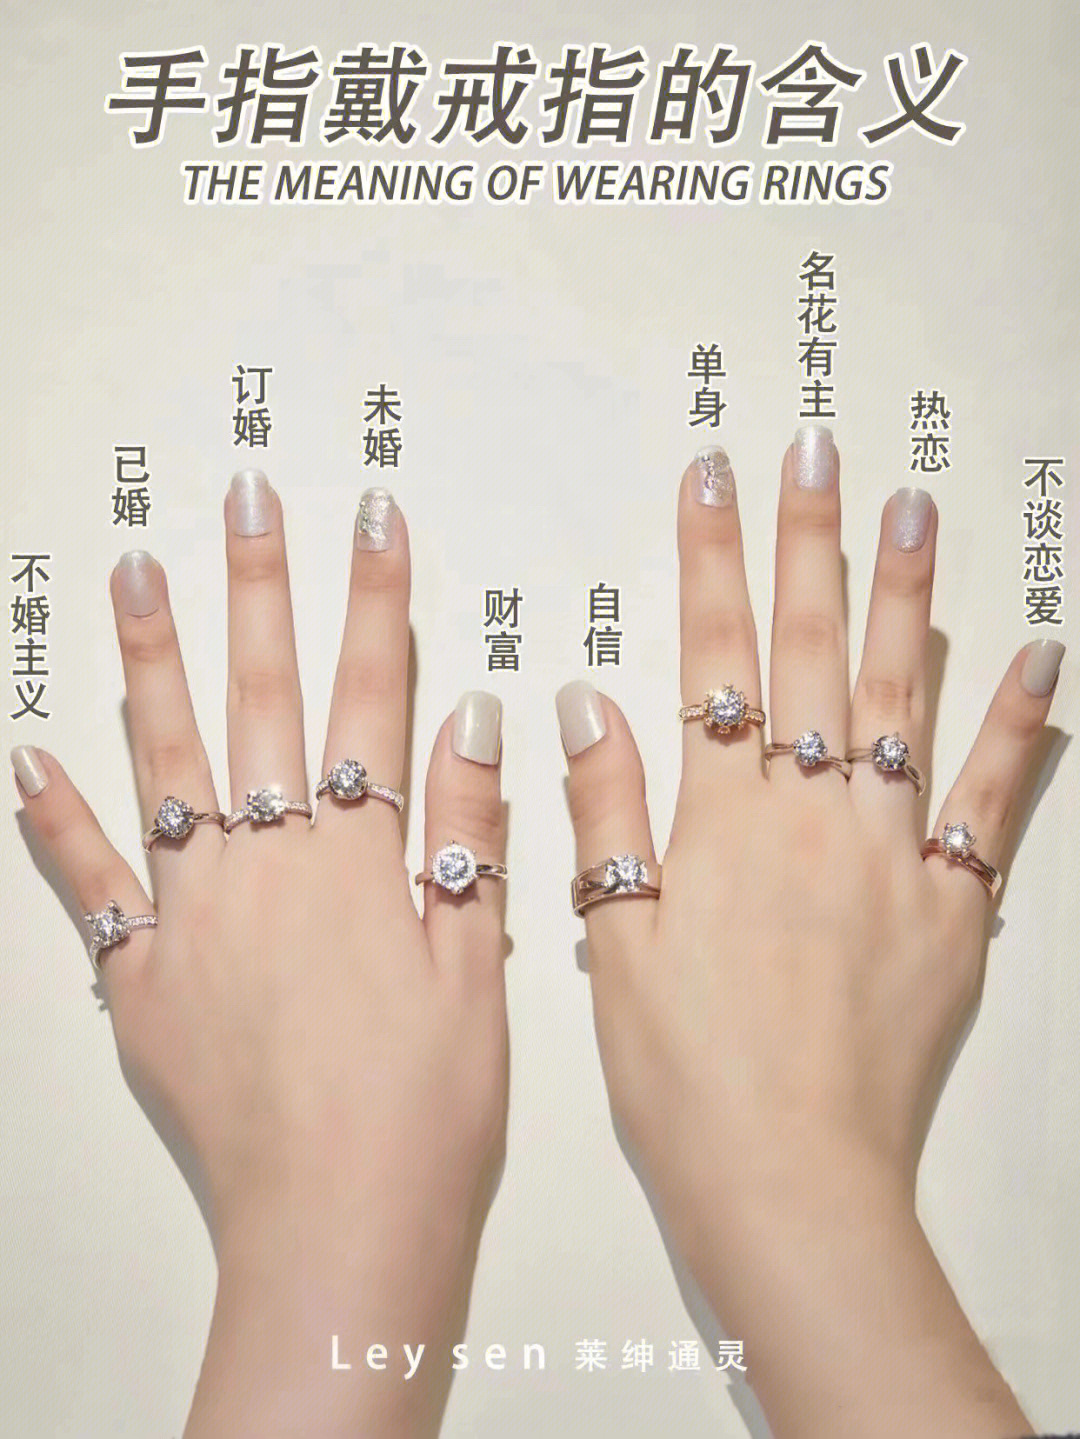 女生带戒指带哪只手?图片